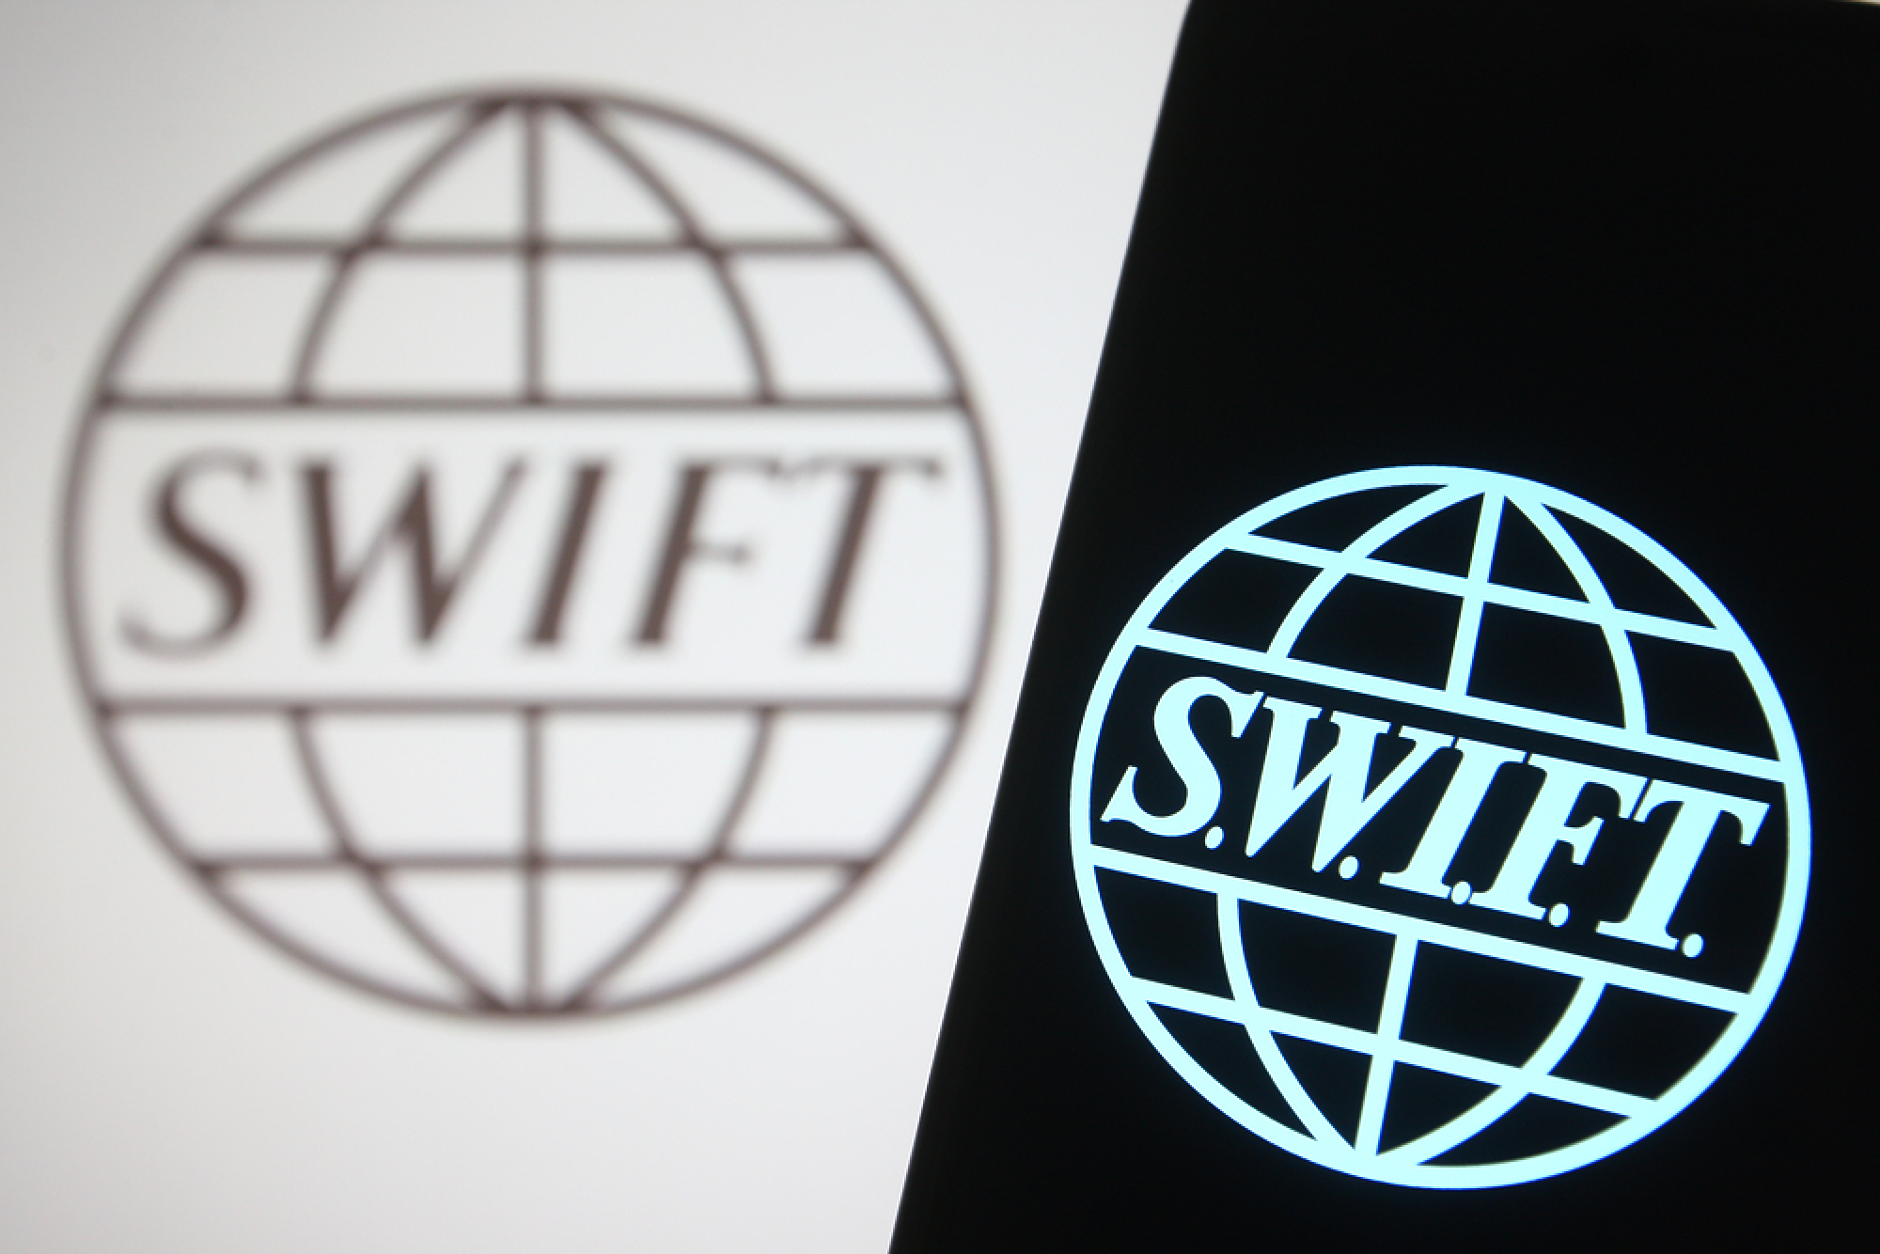 SWIFT създава нова платформа за цифрови валути на централните банки в следващите 12-24 месеца